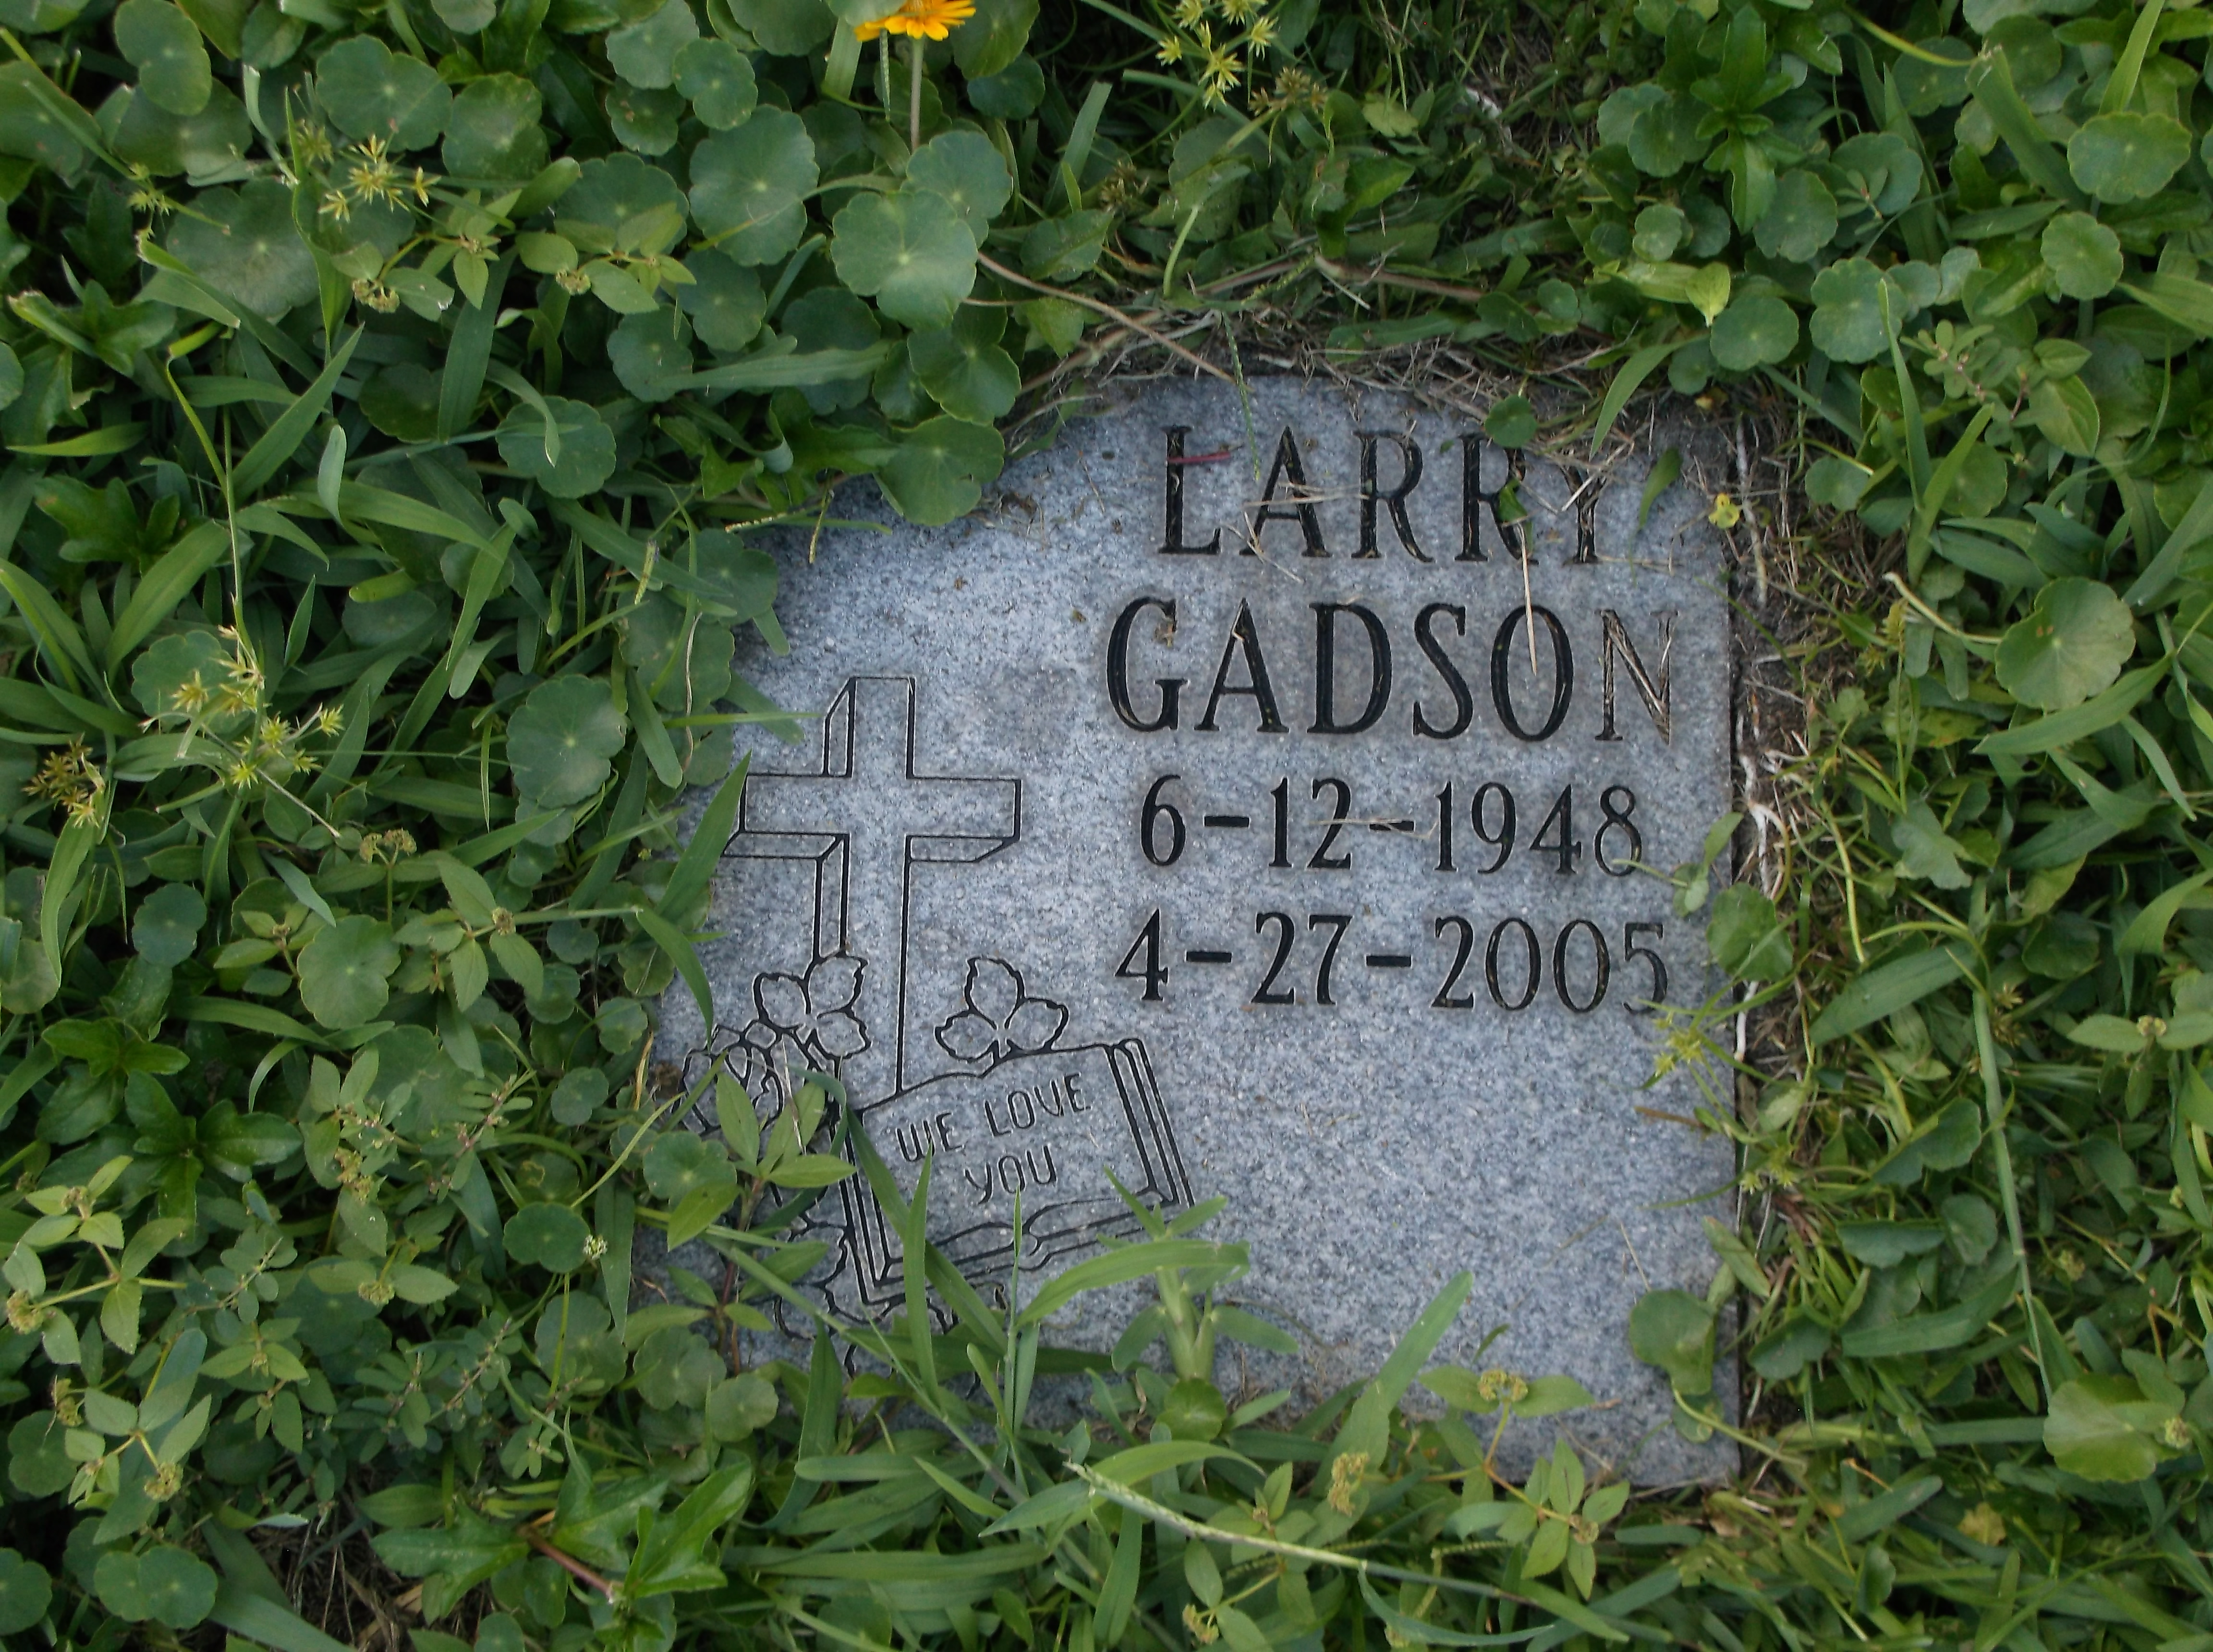 Larry Gadson